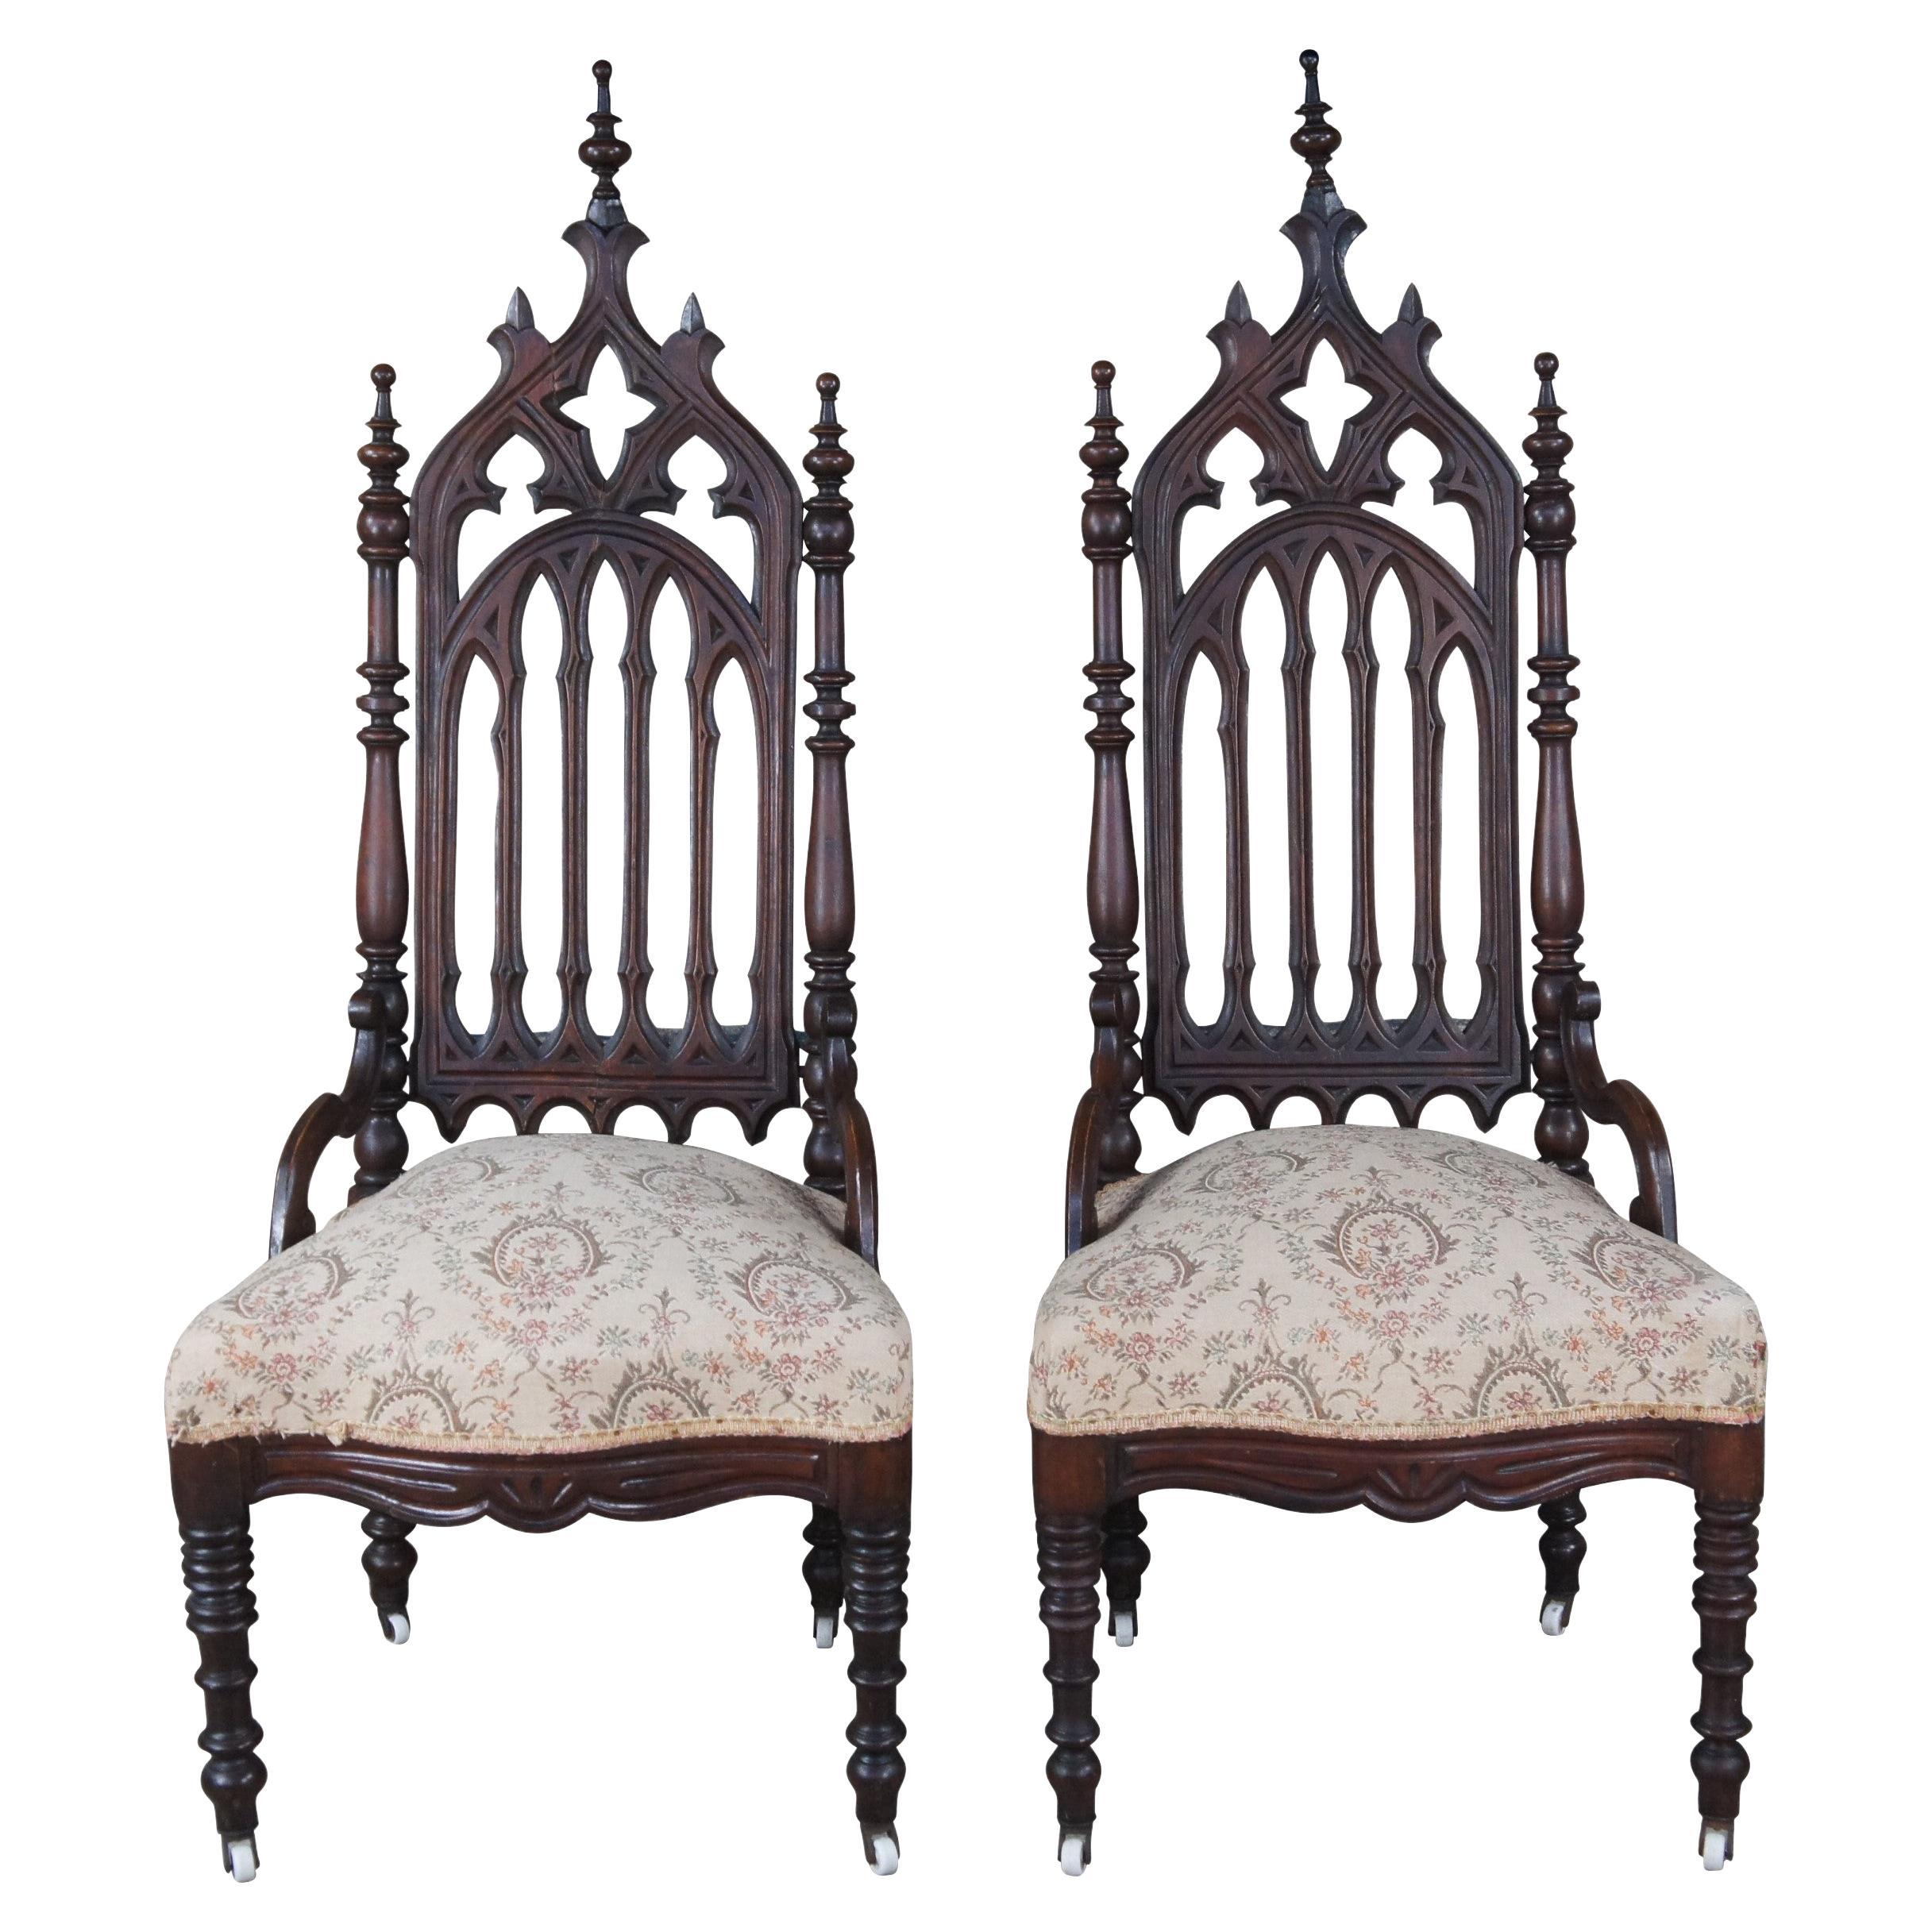 2 chaises trônes de salle à manger anciennes en acajou sculpté de style néo-gothique de la Renaissance